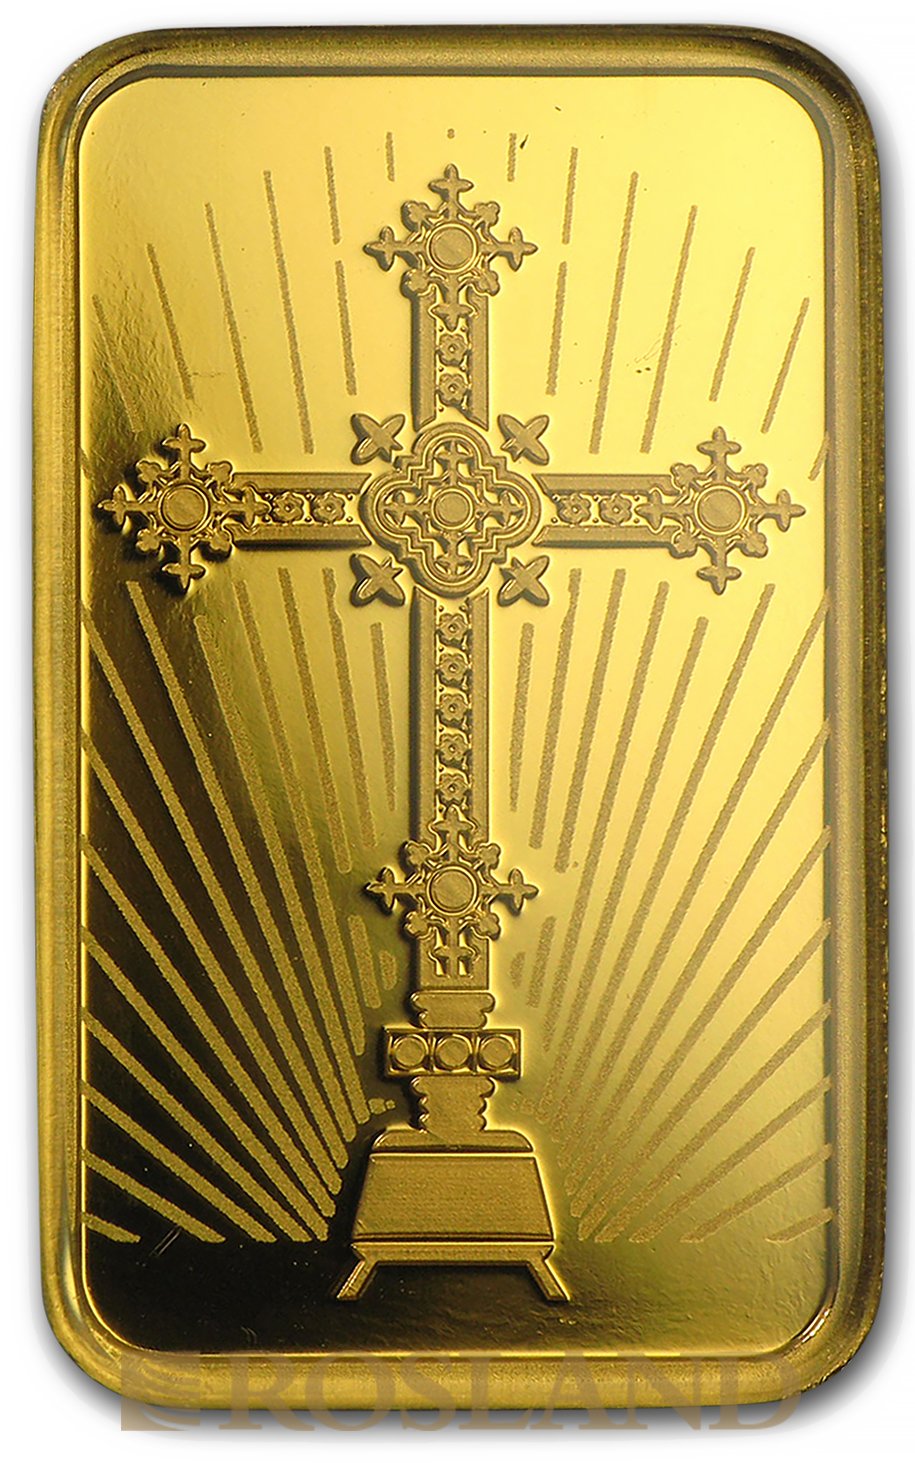 10 Gramm Goldbarren PAMP Religion - Römisches Kreuz